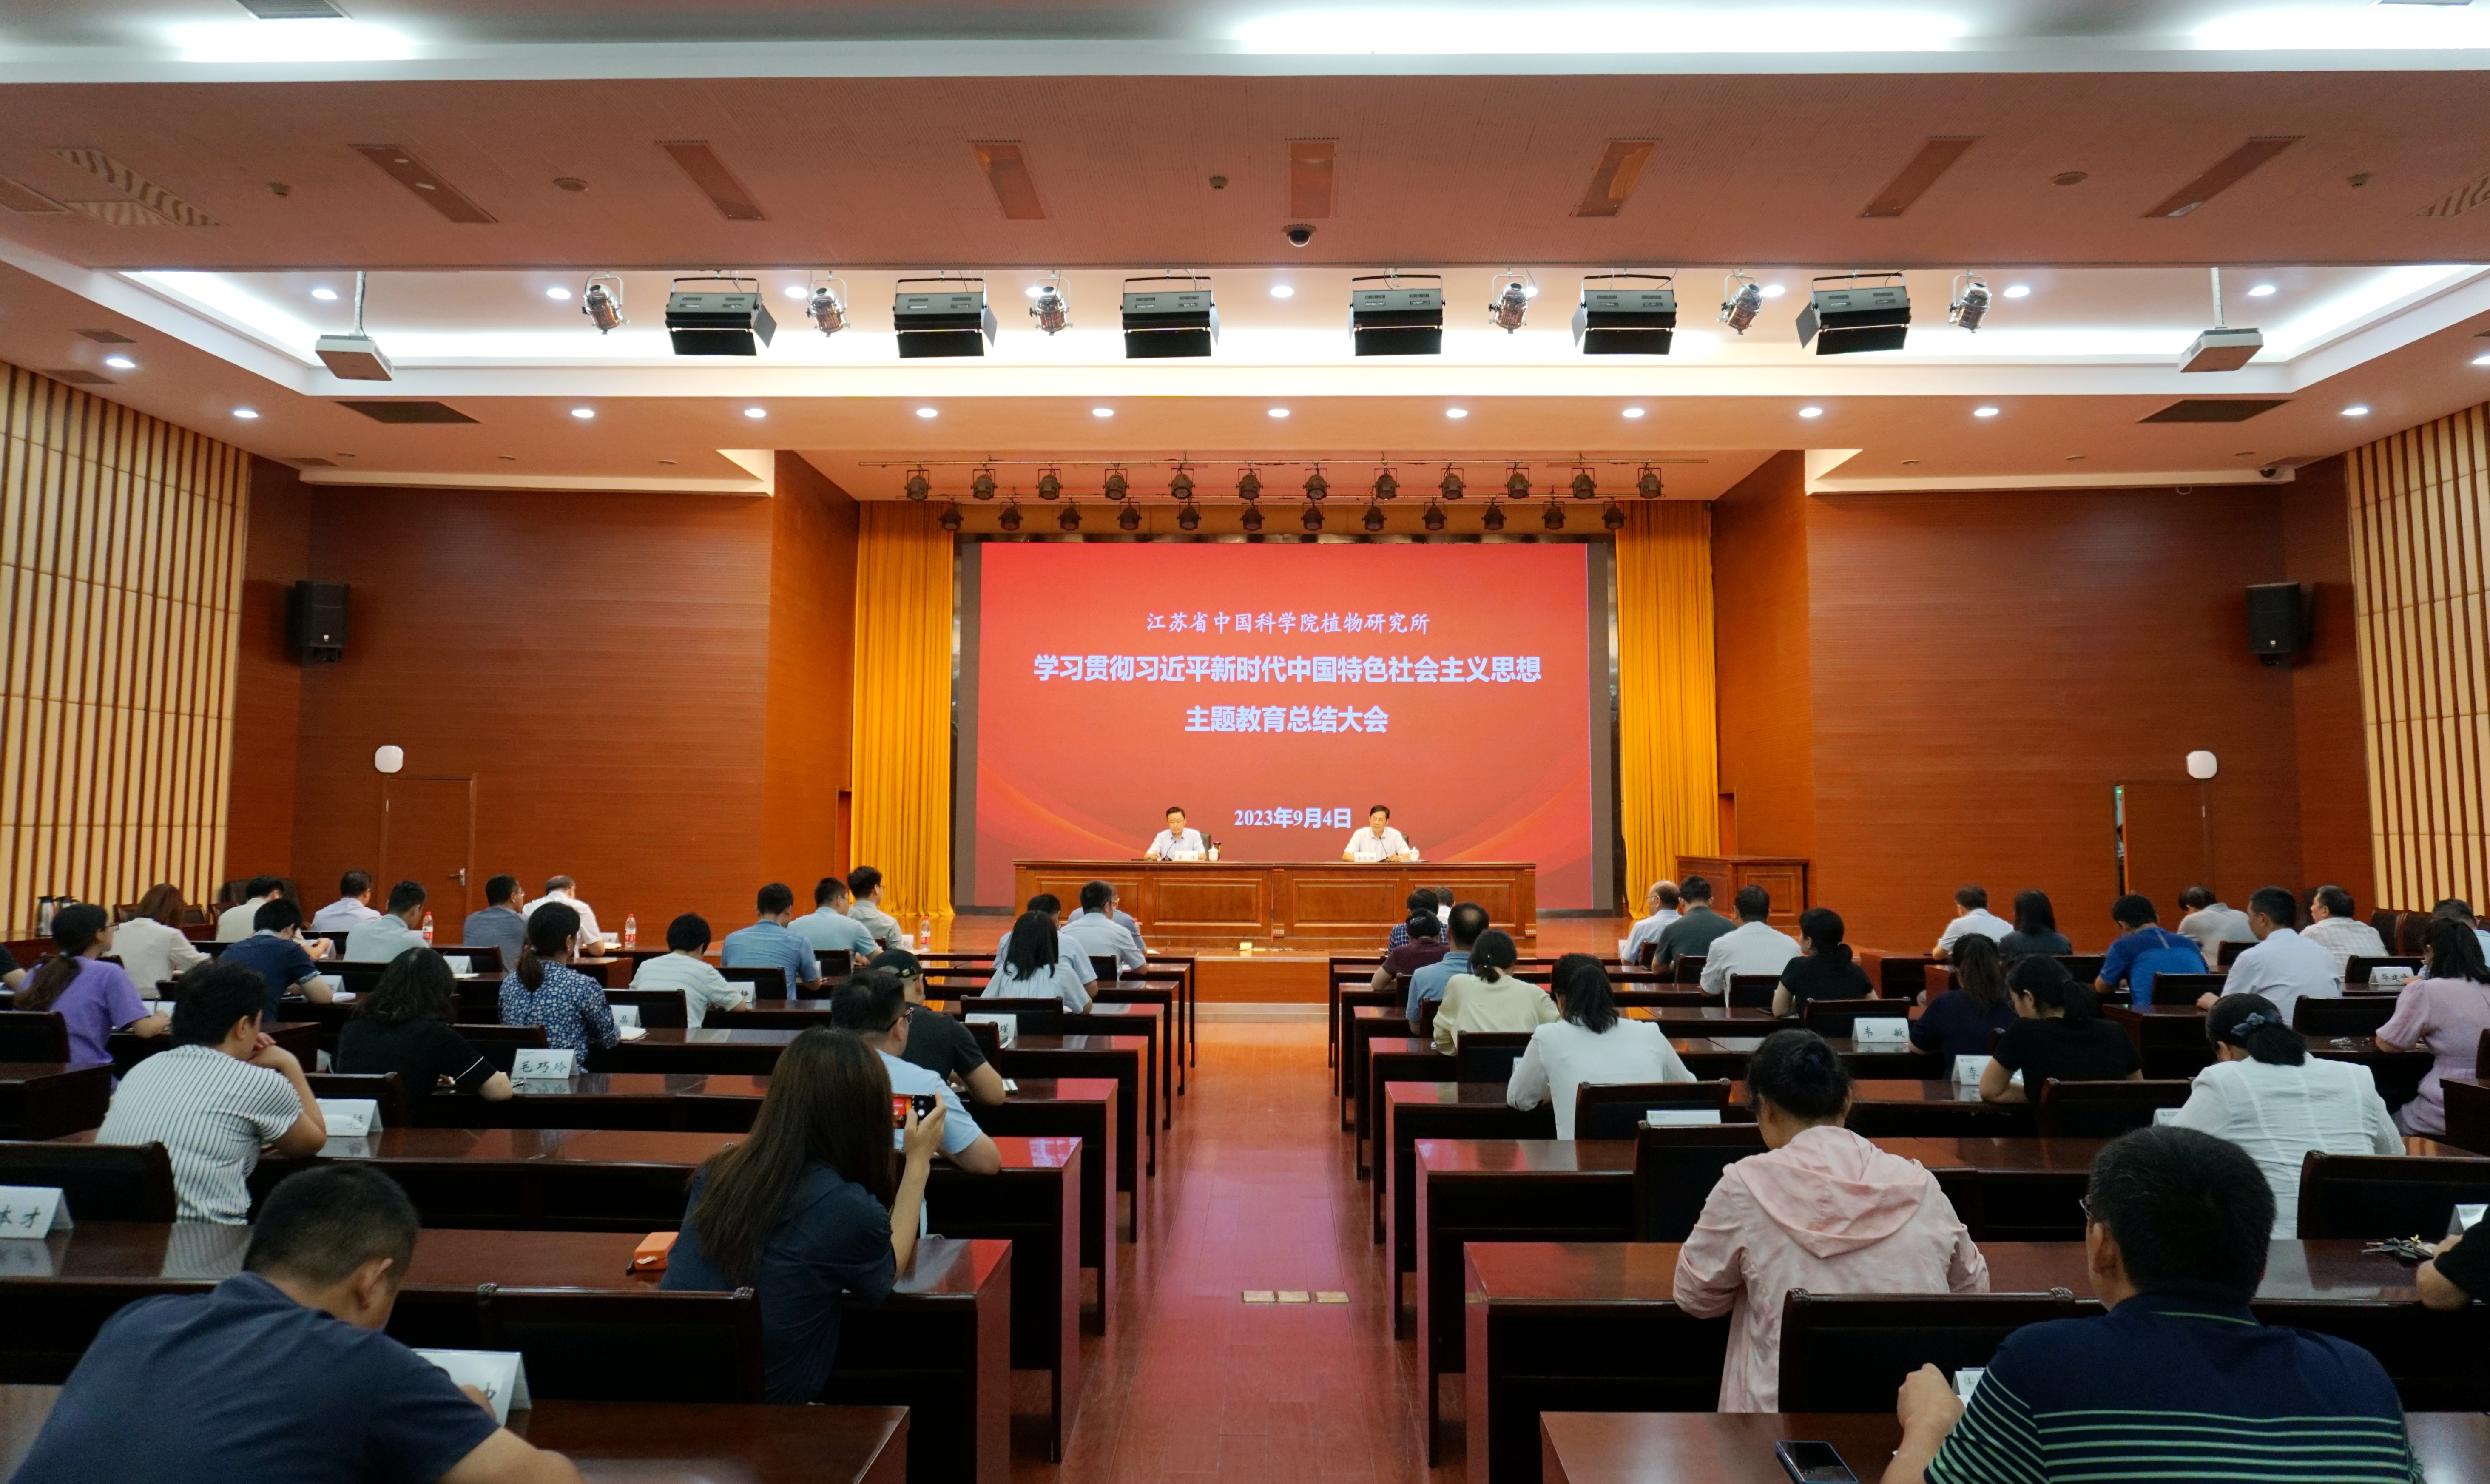 所（园）召开学习贯彻习近平新时代中国特色社会主义思想主题教育总结会议